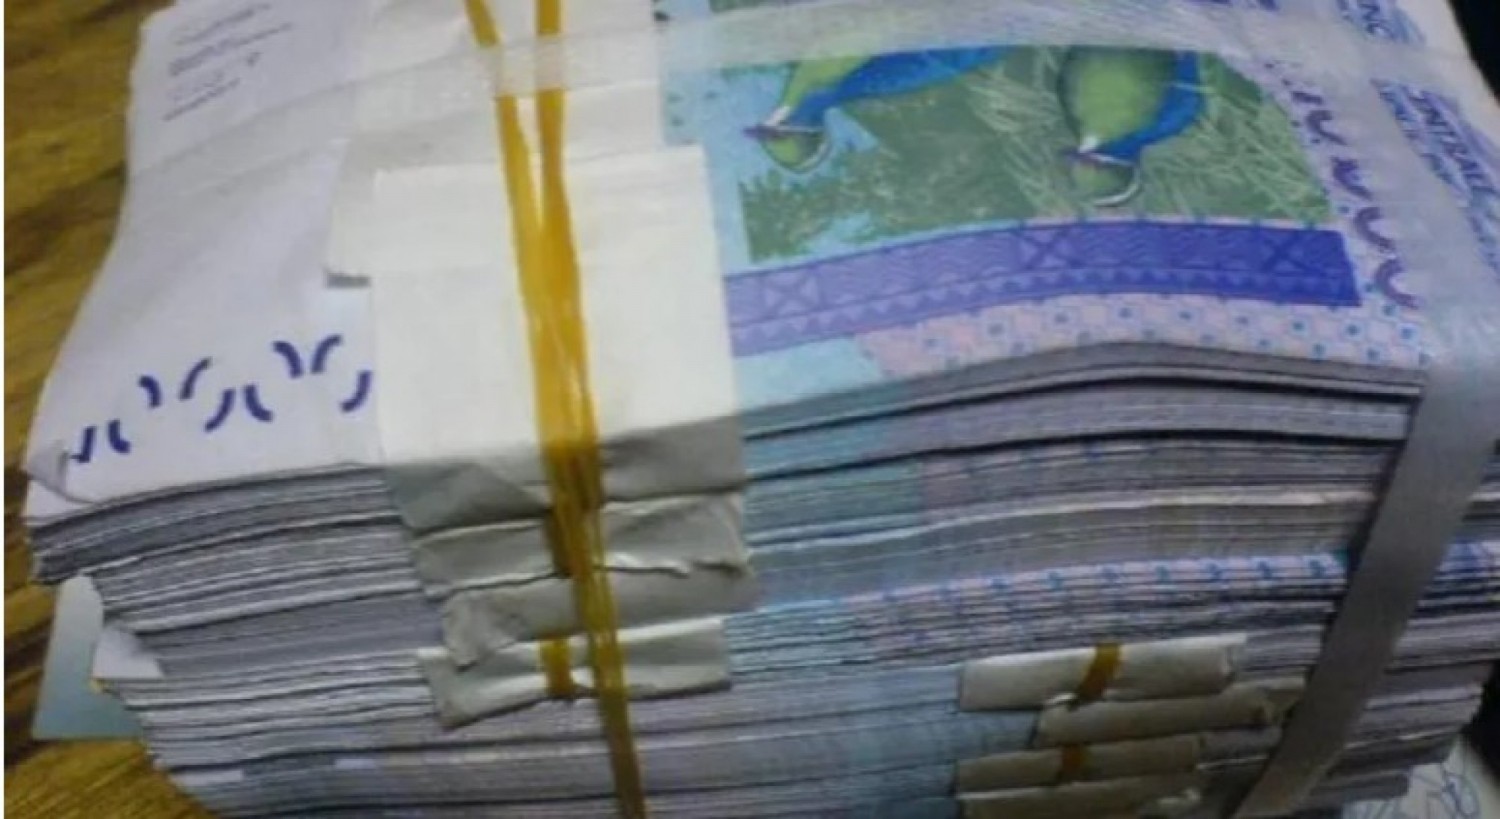 Côte d'Ivoire : 1,2 milliard de faux billets saisis dans un hôtel à Abobo, des suspects interpellés